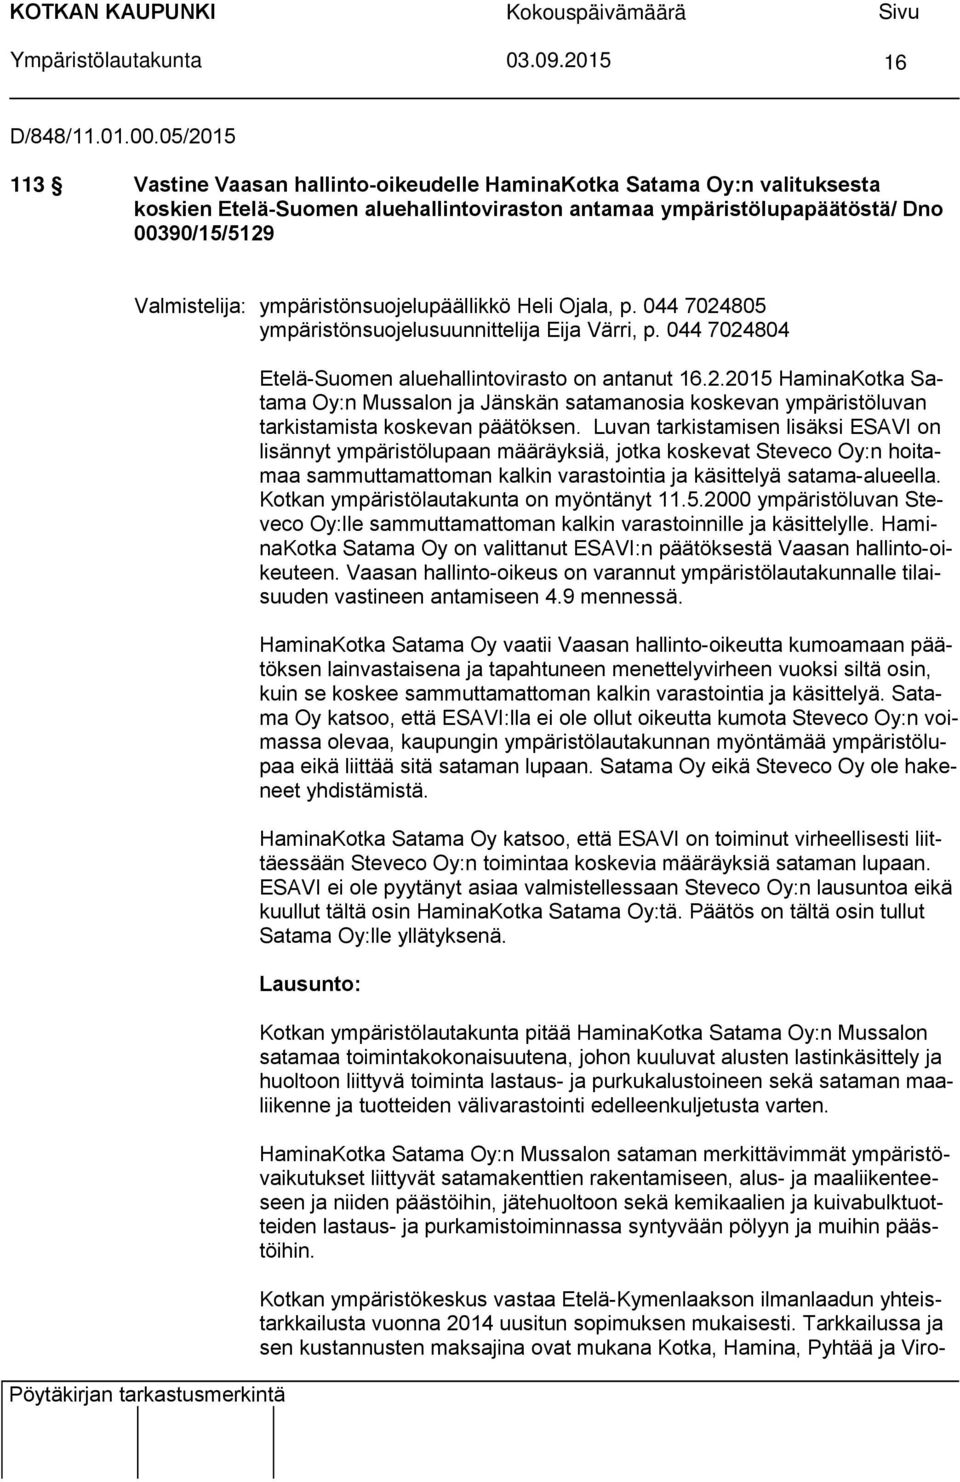 ympäristönsuojelupäällikkö Heli Ojala, p. 044 7024805 ympäristönsuojelusuunnittelija Eija Värri, p. 044 7024804 Pöytäkirjan tarkastusmerkintä Etelä-Suomen aluehallintovirasto on antanut 16.2.2015 HaminaKotka Satama Oy:n Mussalon ja Jänskän satamanosia koskevan ympäristöluvan tarkistamista koskevan päätöksen.